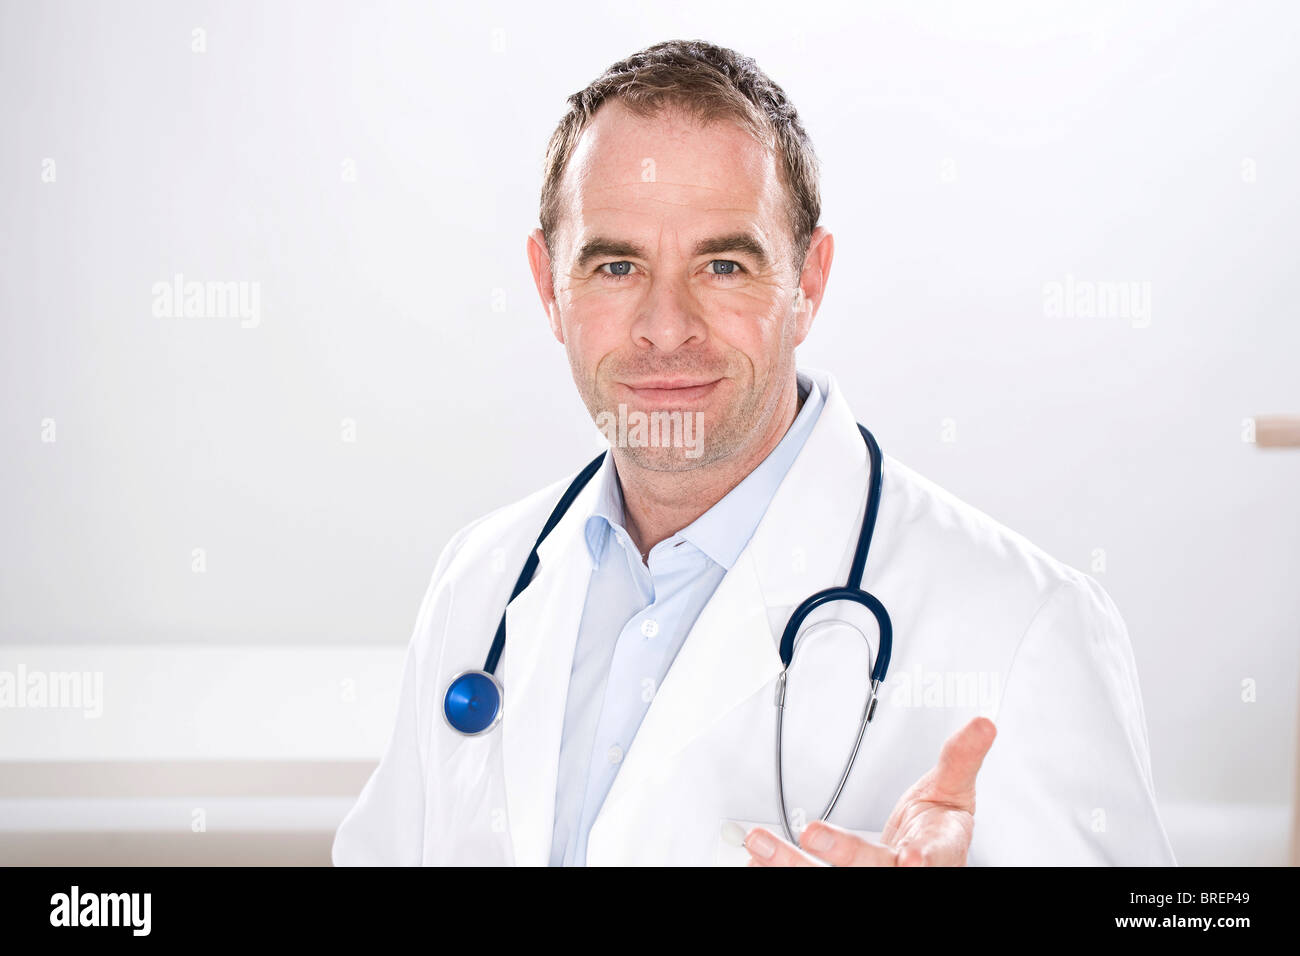 Uomo che indossa medical scrubs, tenuto in mano ed estrarlo dalla parte anteriore, guardando questioningly Foto Stock